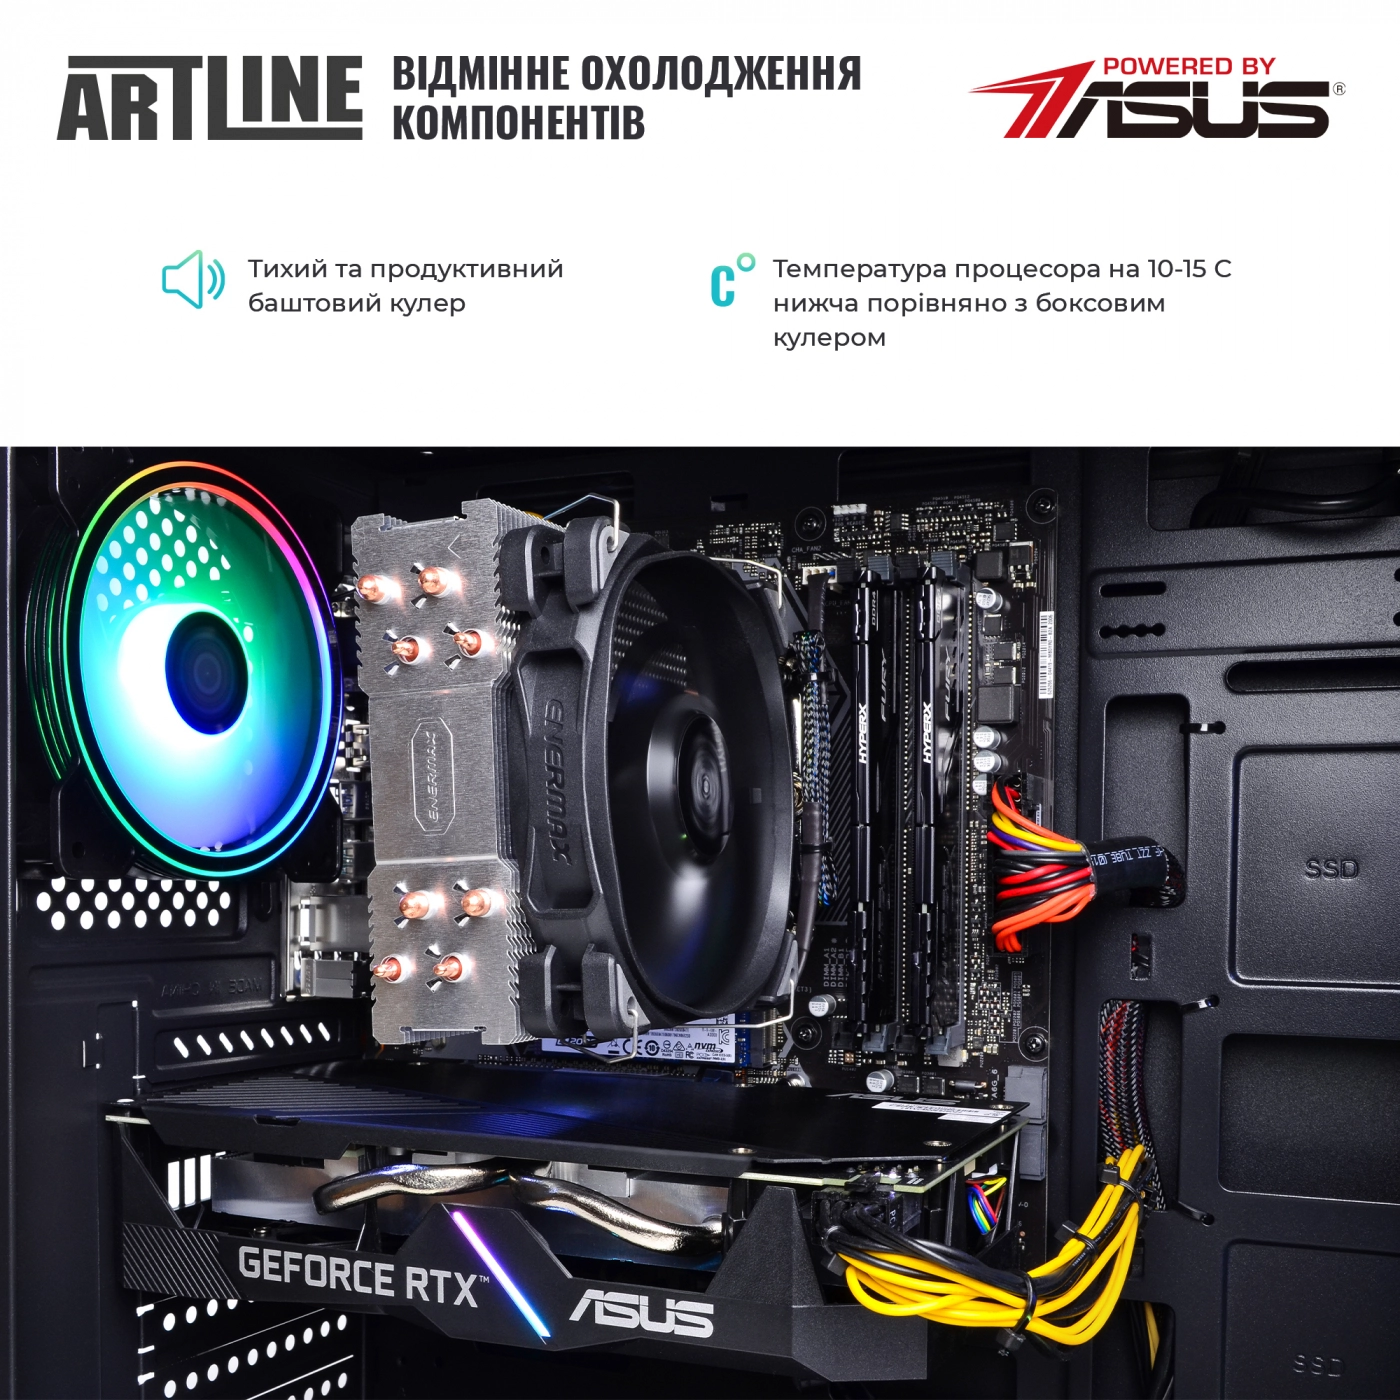 Купить Компьютер ARTLINE Gaming X74v17 - фото 7